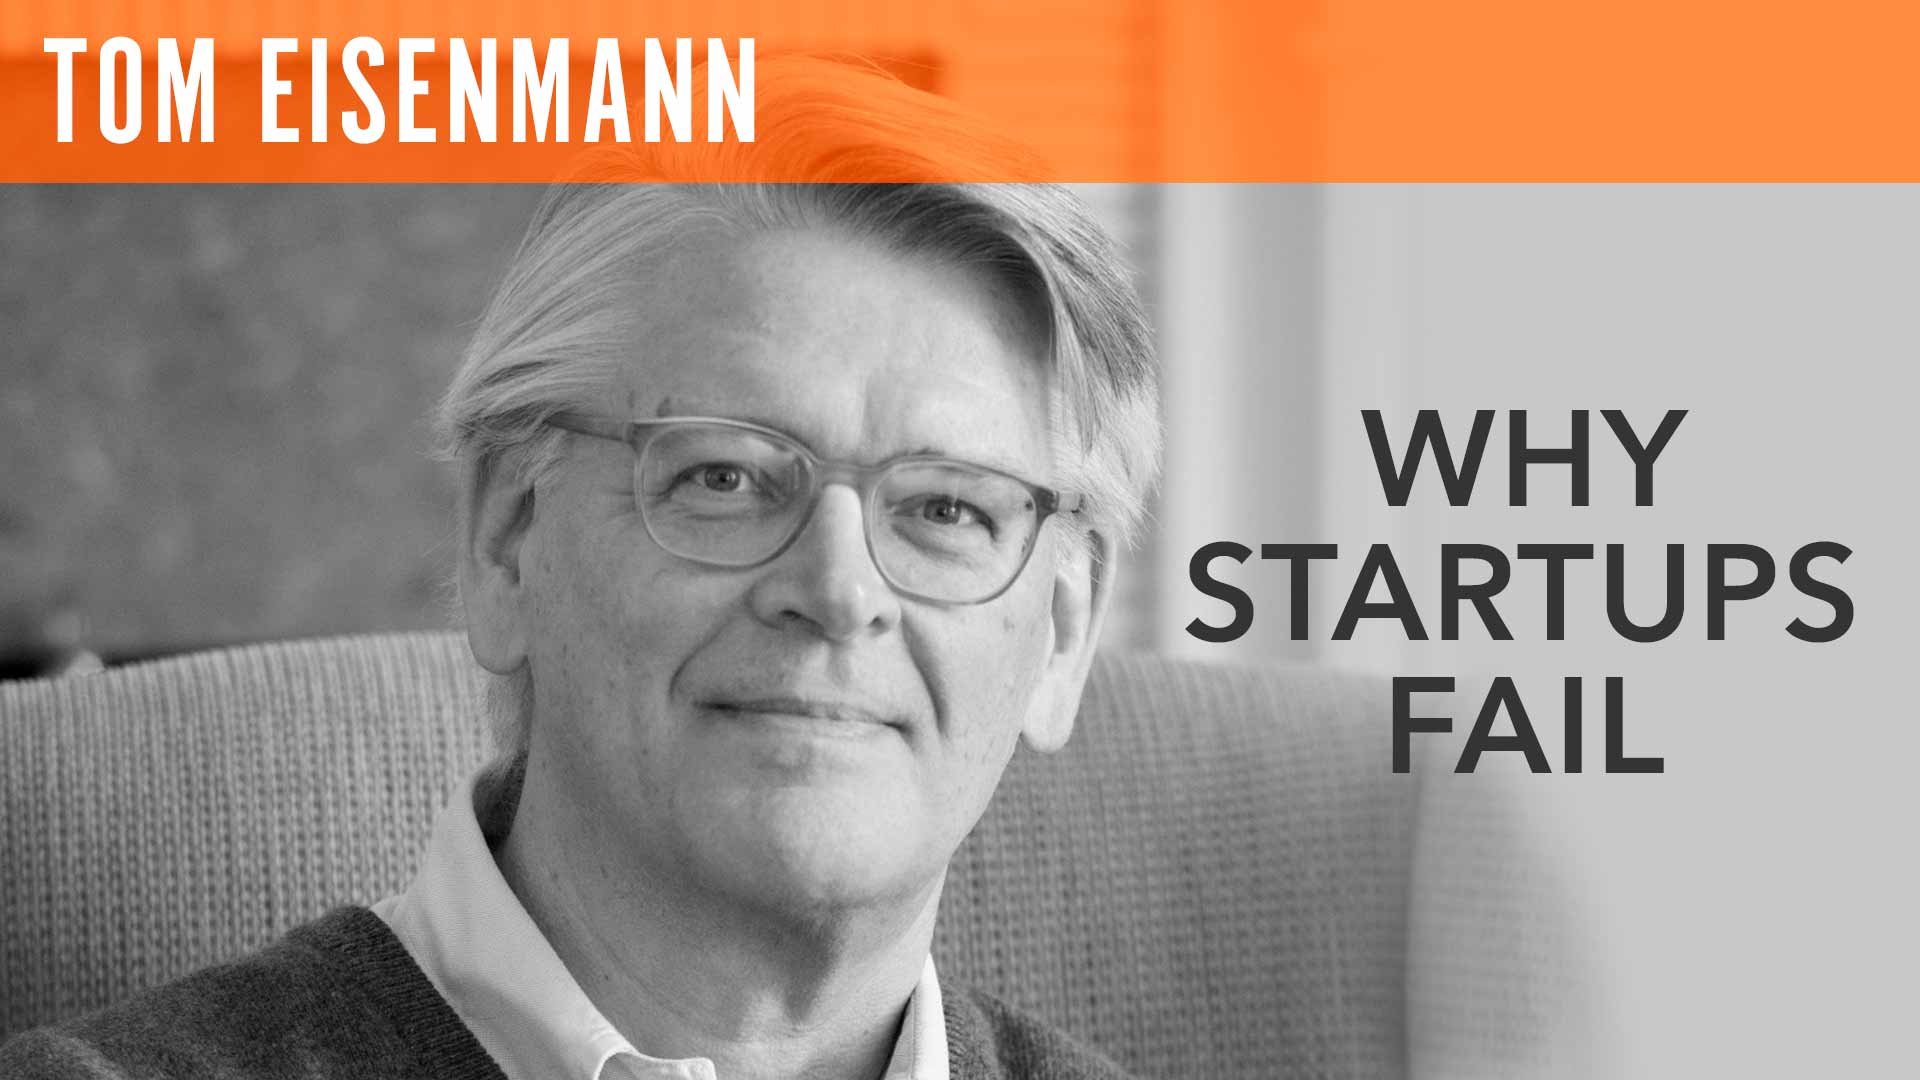 Tom Eisenmann, "Why Startups Fail"